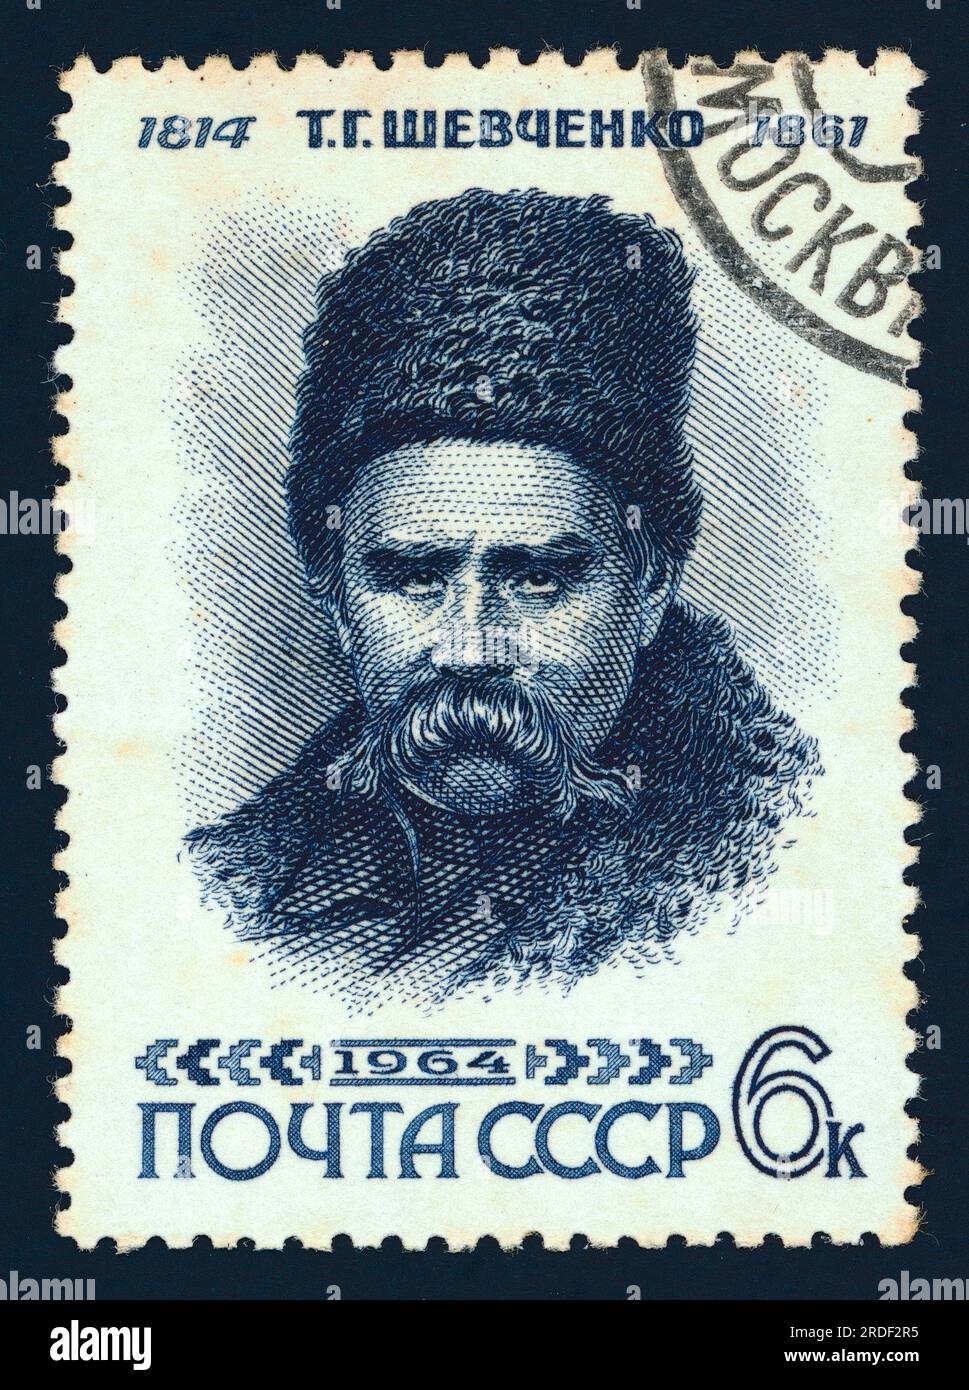 Taras Hryhorovych Shevchenko (1814 – 1861). Timbre-poste émis en URSS en 1964 (en commémoration du 50e anniversaire de sa naissance). Valeur faciale : 6 kopeks. Banque D'Images